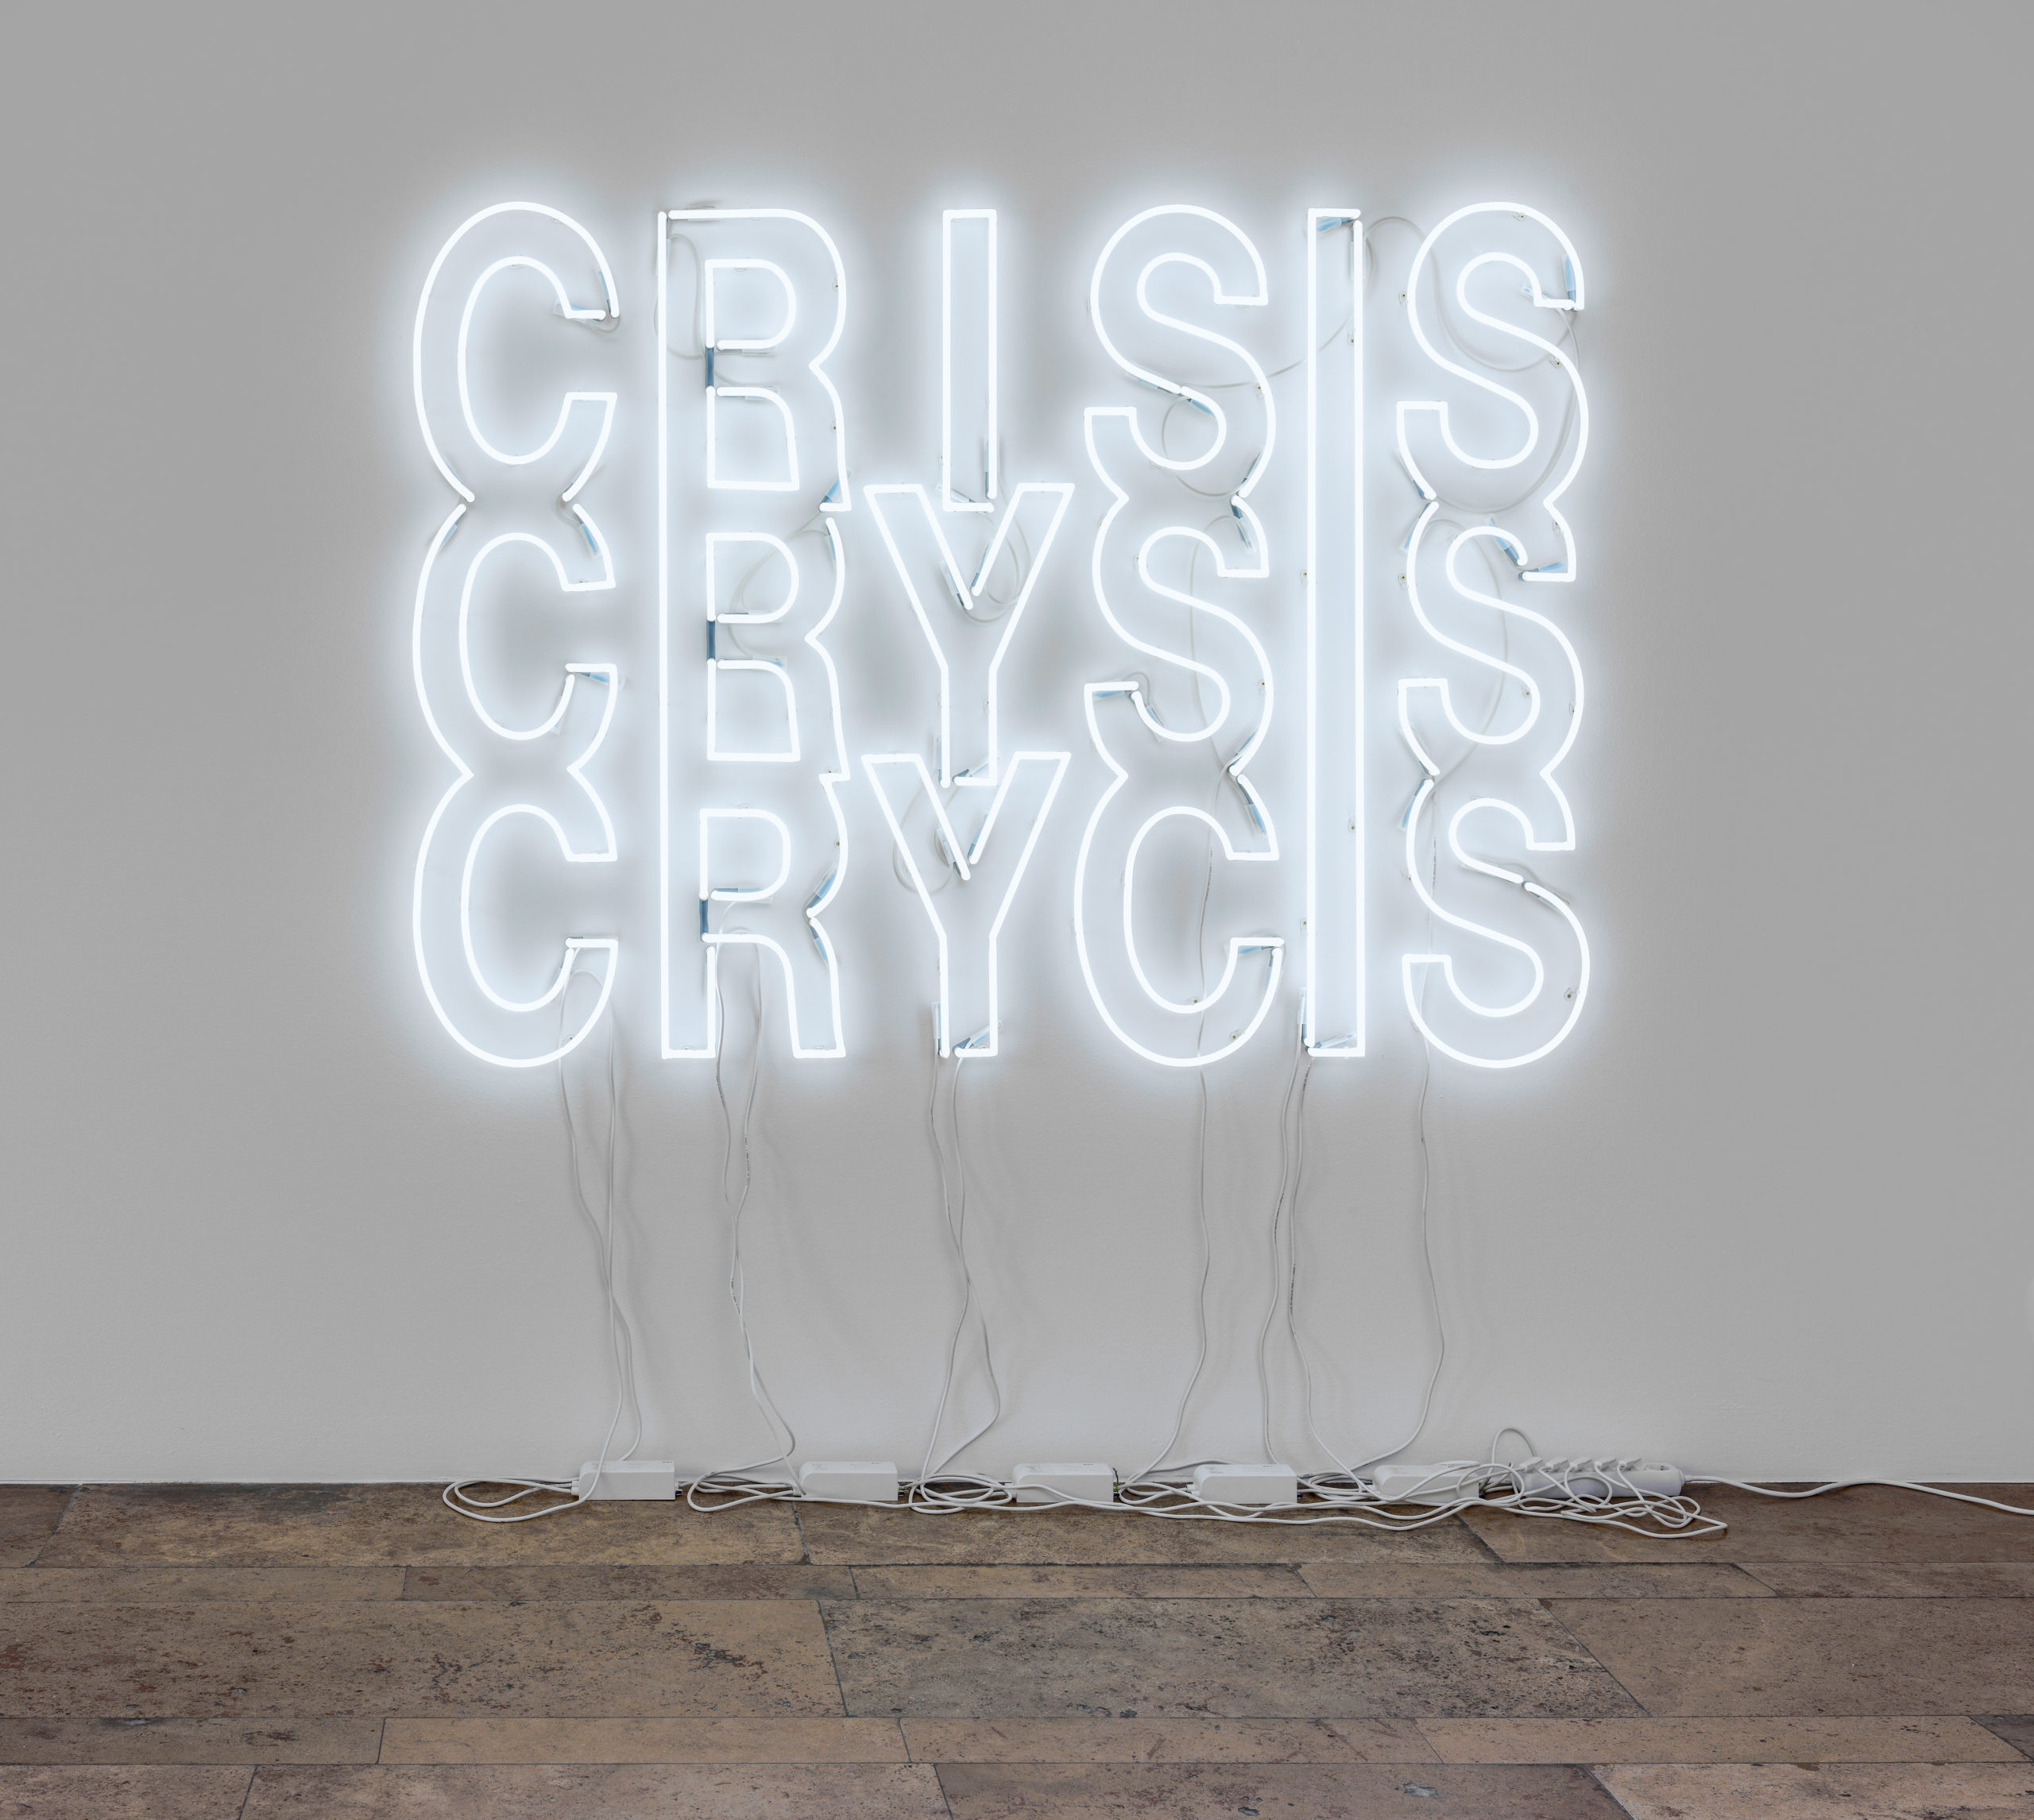  Werkansicht von Yeal Bartanas Neoninstallation "Crisis Crysis Crycis" aus dem Jahr 2020, zu sehen in der Ausstellung "Diversity United". 